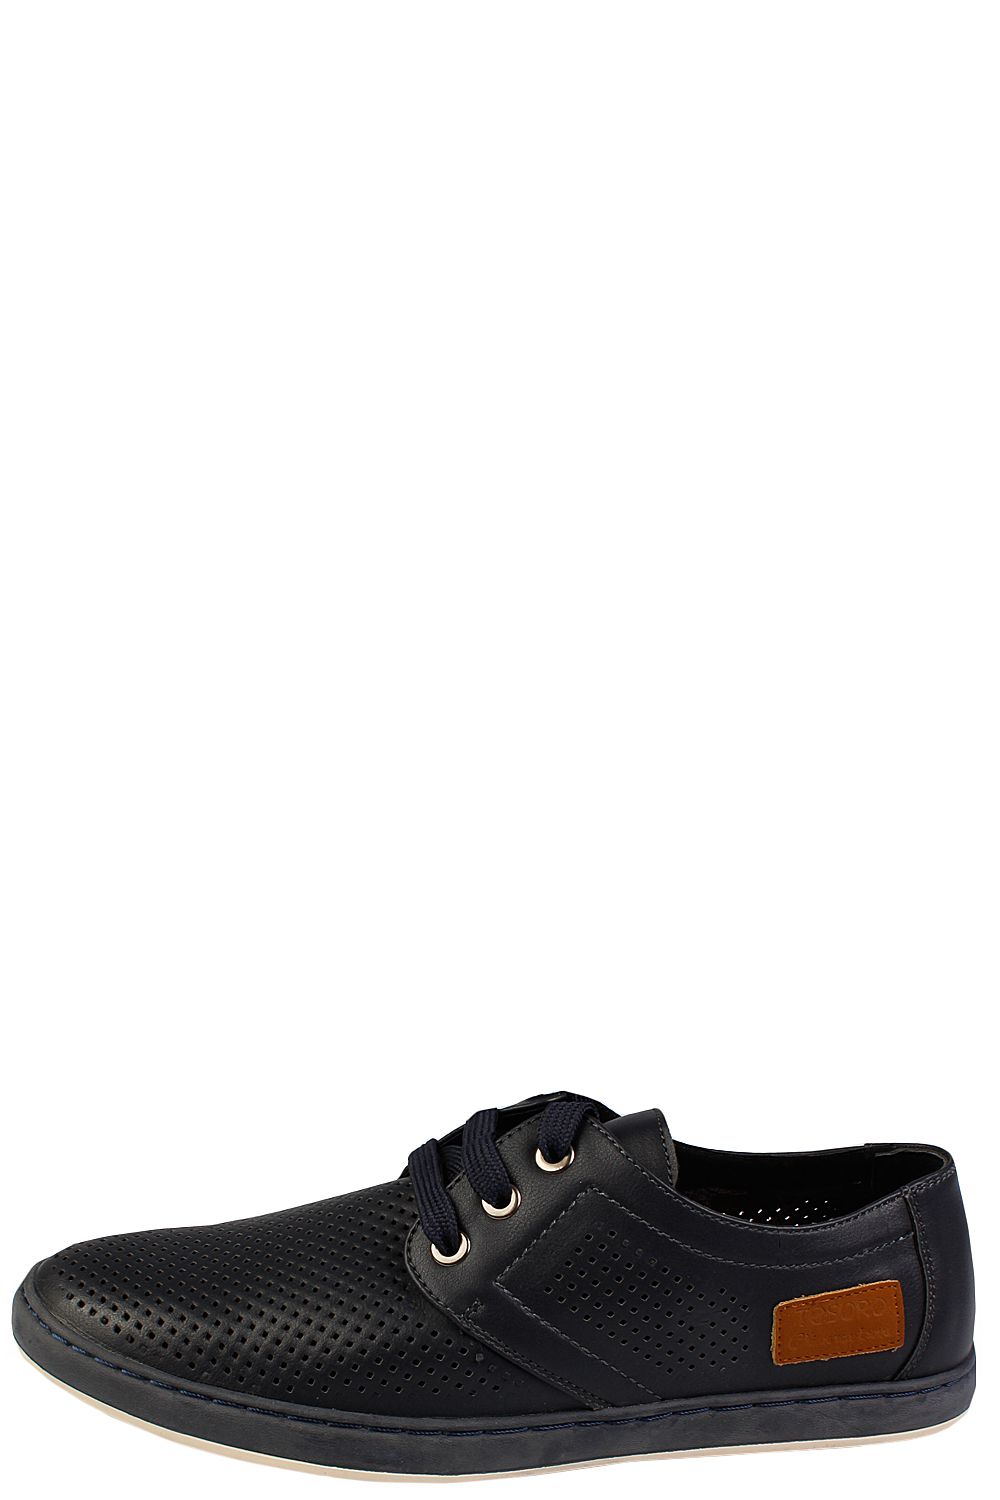 Туфли Tesoro, размер 41, цвет черный - фото 1